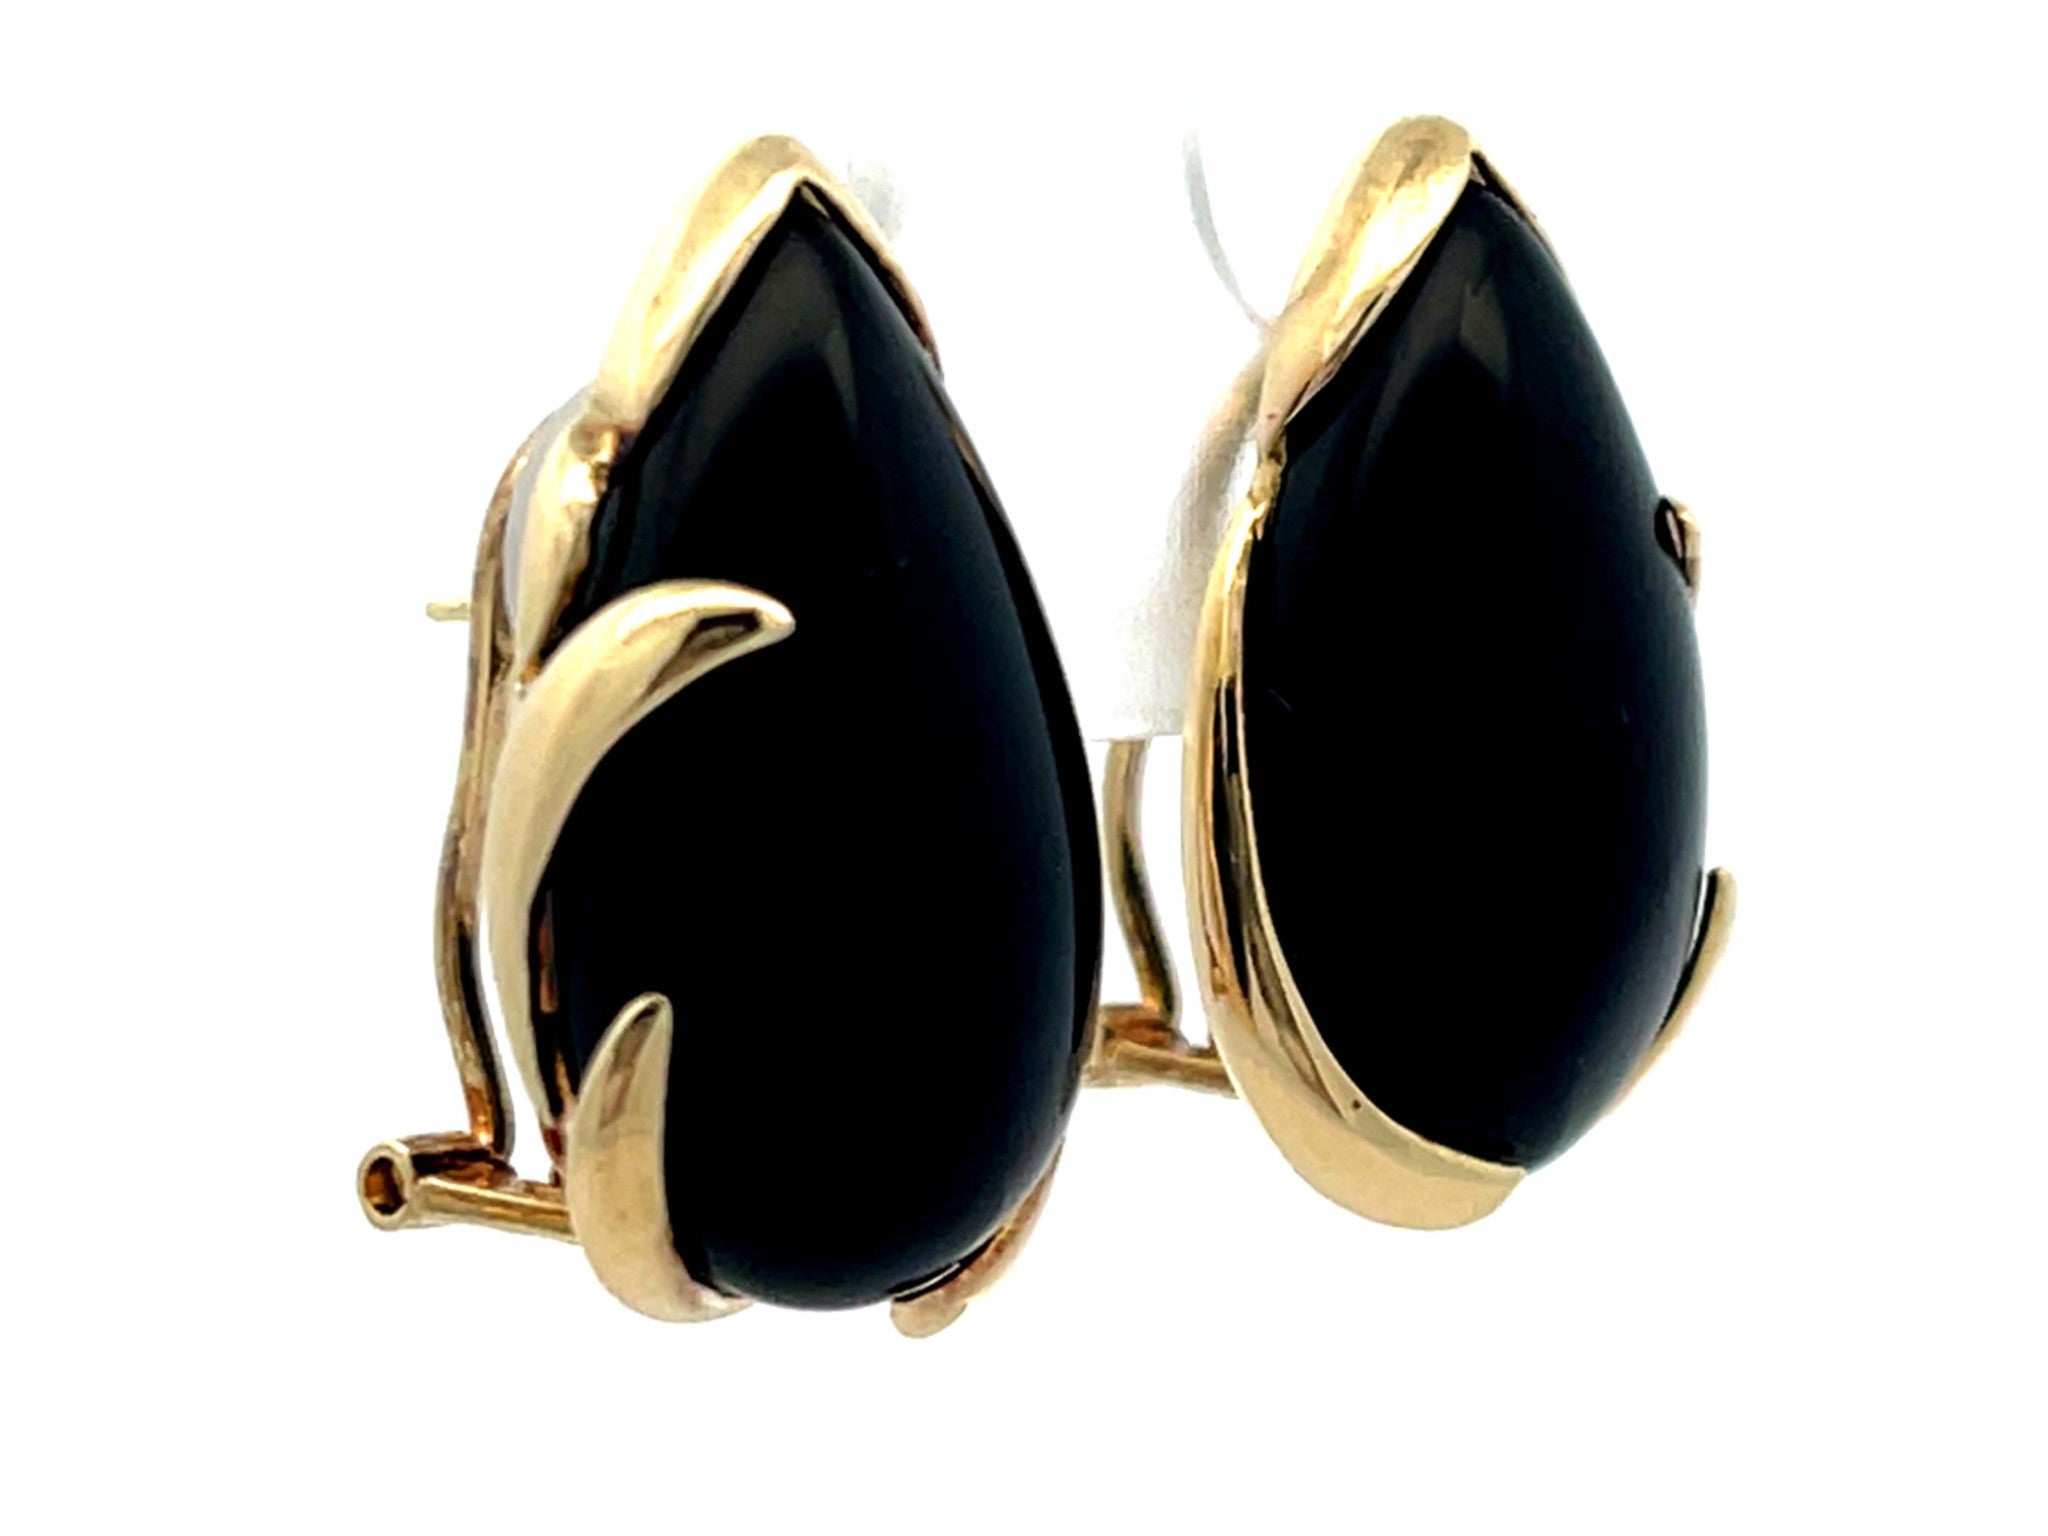 Pear Shaped Black Onyx Earrings in 14k Yellow Gold